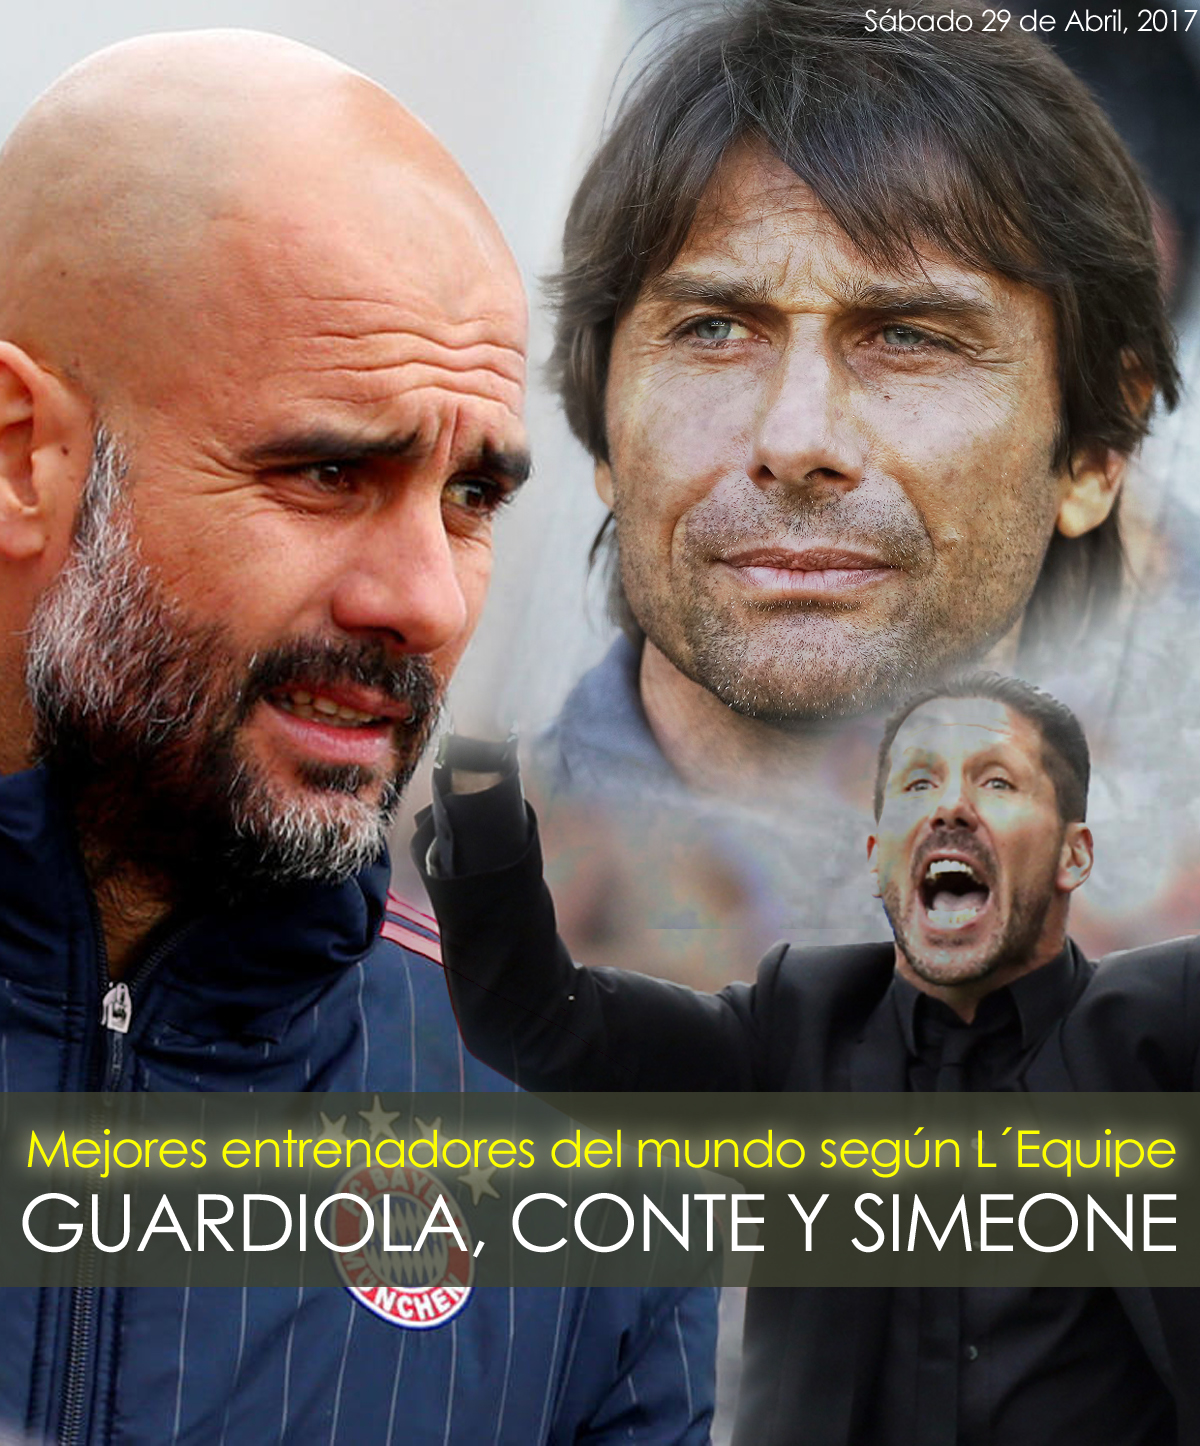 Guardiola, Conte y Simeone, mejores entrenadores del mundo 